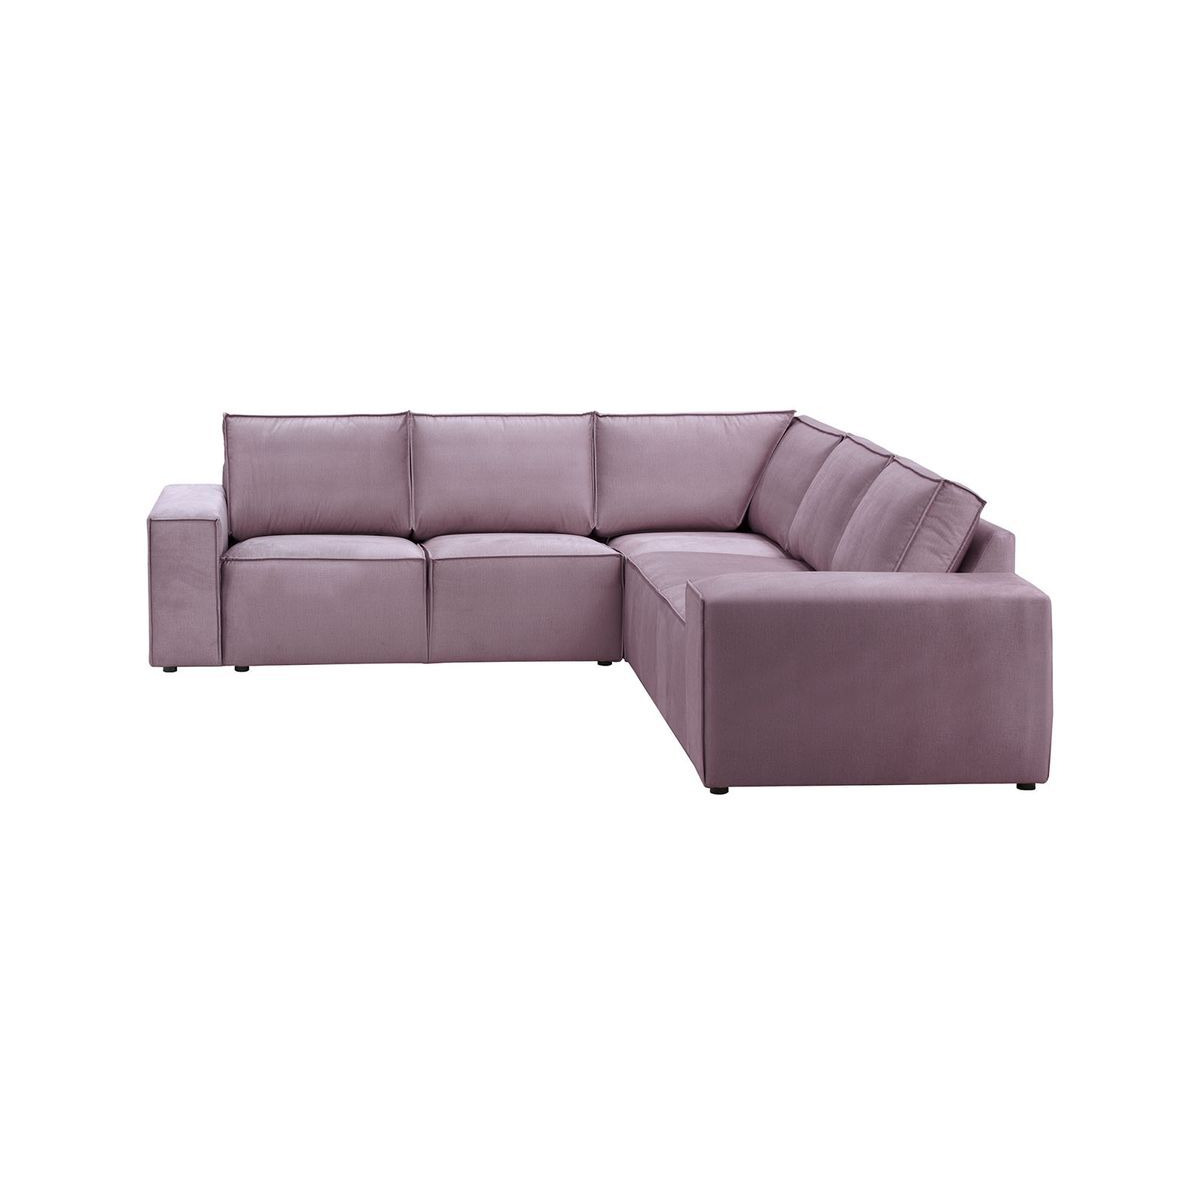 Charles Large Modular Corner Sofa, blush - image 1